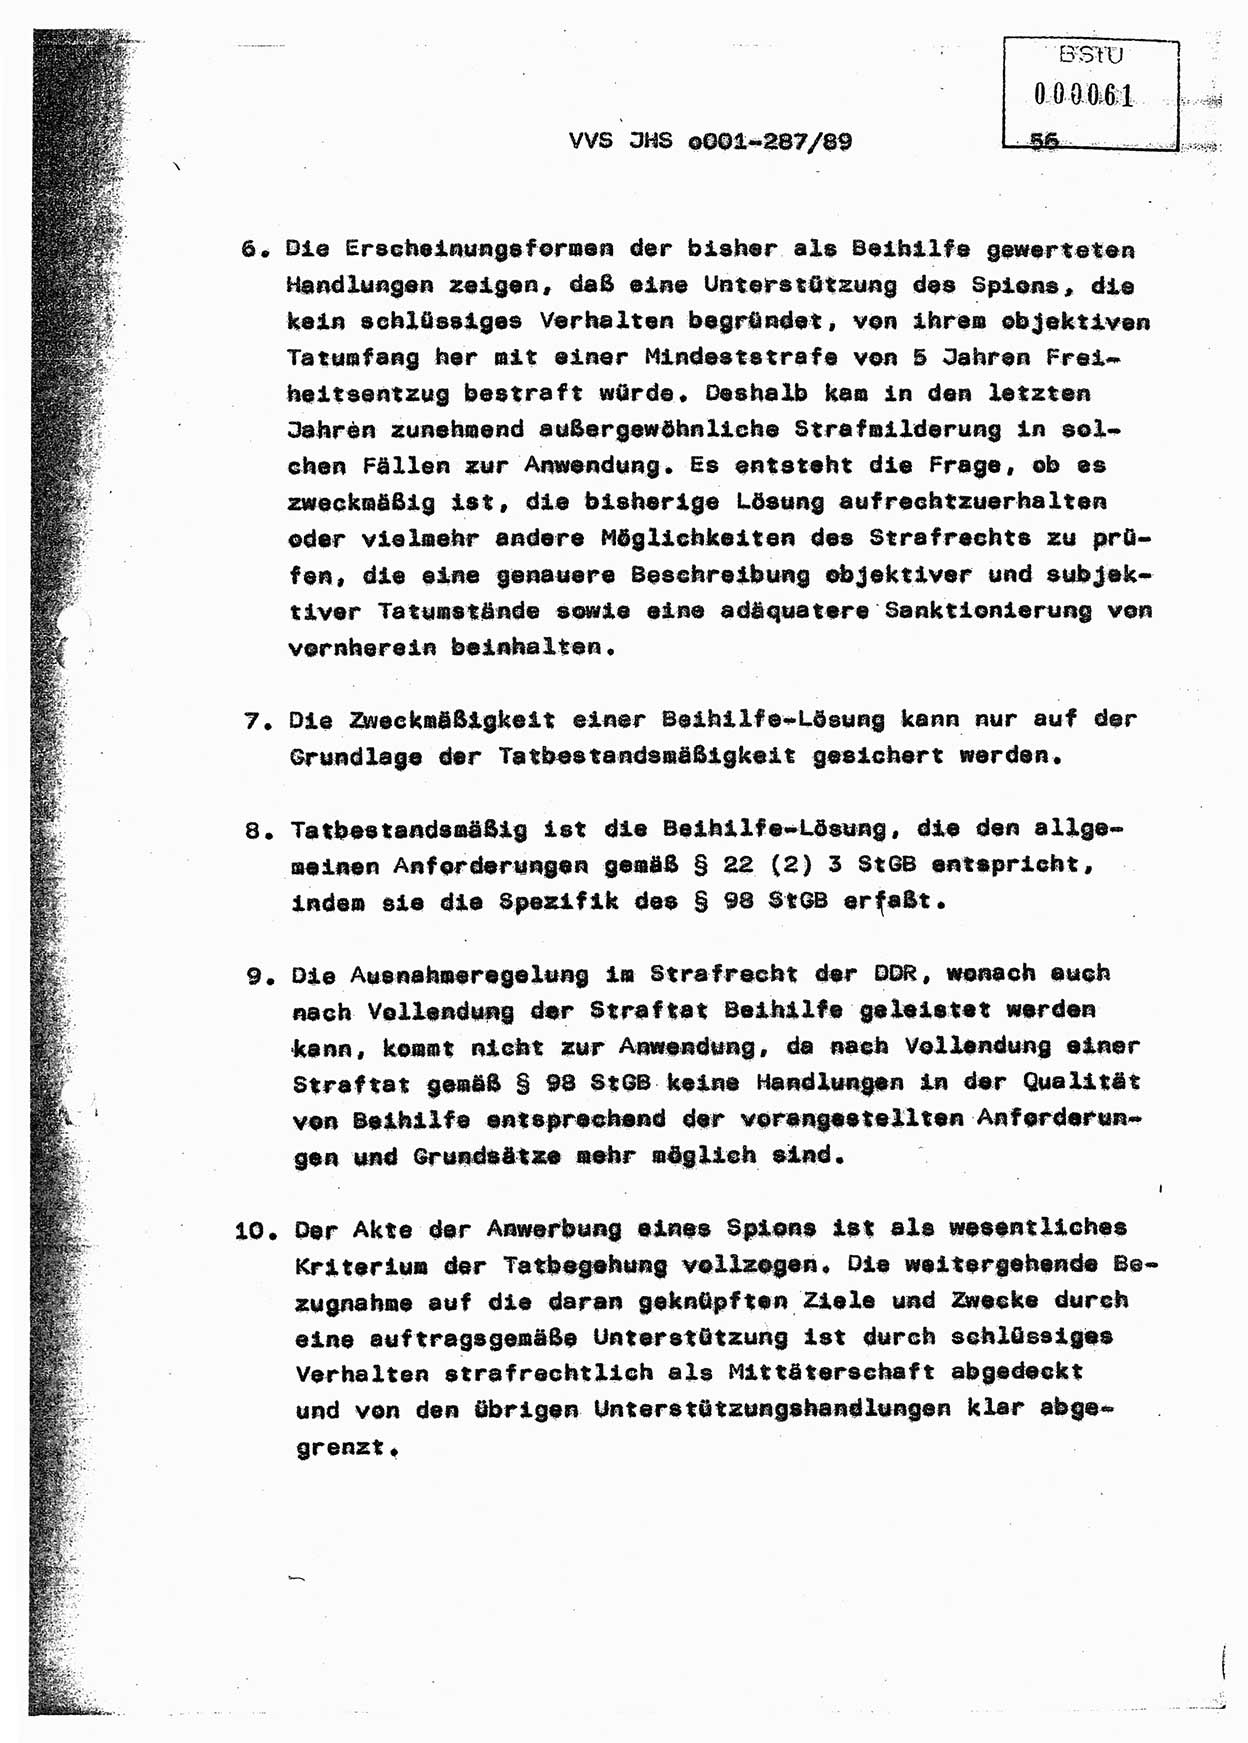 Diplomarbeit, Offiziersschüler Harald Wabst (HA Ⅸ/1), Ministerium für Staatssicherheit (MfS) [Deutsche Demokratische Republik (DDR)], Juristische Hochschule (JHS), Vertrauliche Verschlußsache (VVS) o001-287/89, Potsdam 1989, Seite 56 (Dipl.-Arb. MfS DDR JHS VVS o001-287/89 1989, S. 56)